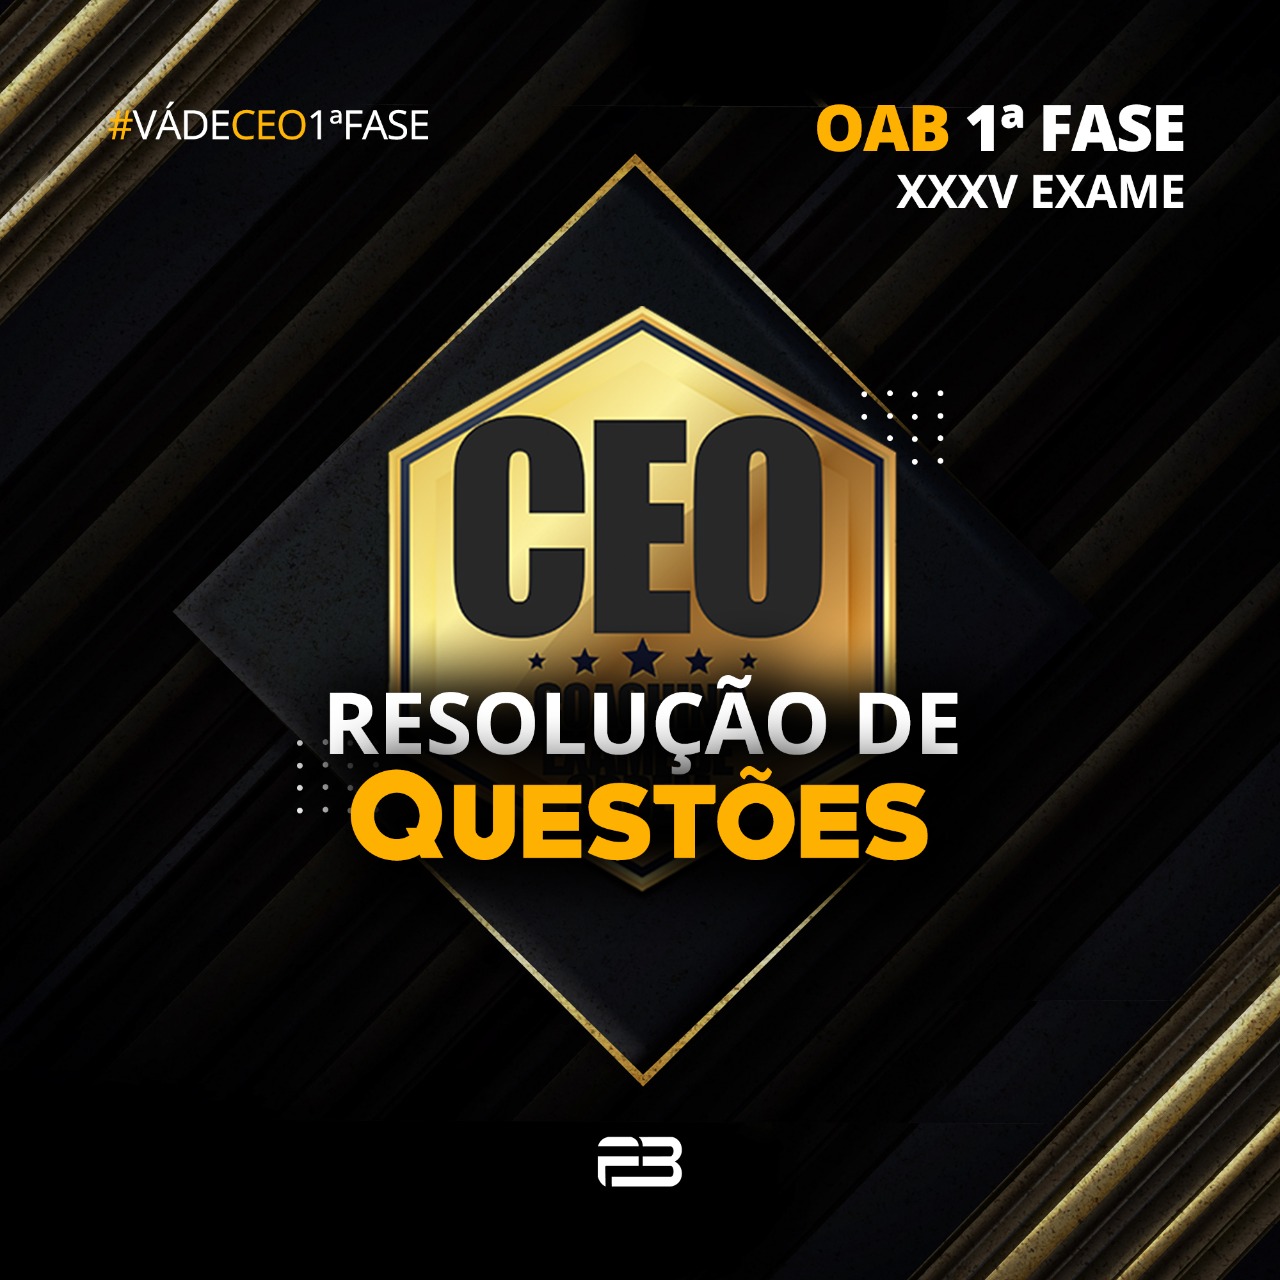 CEO RESOLUÇÃO DE QUESTÕES XXXV EXAME - OAB 1ª FASE